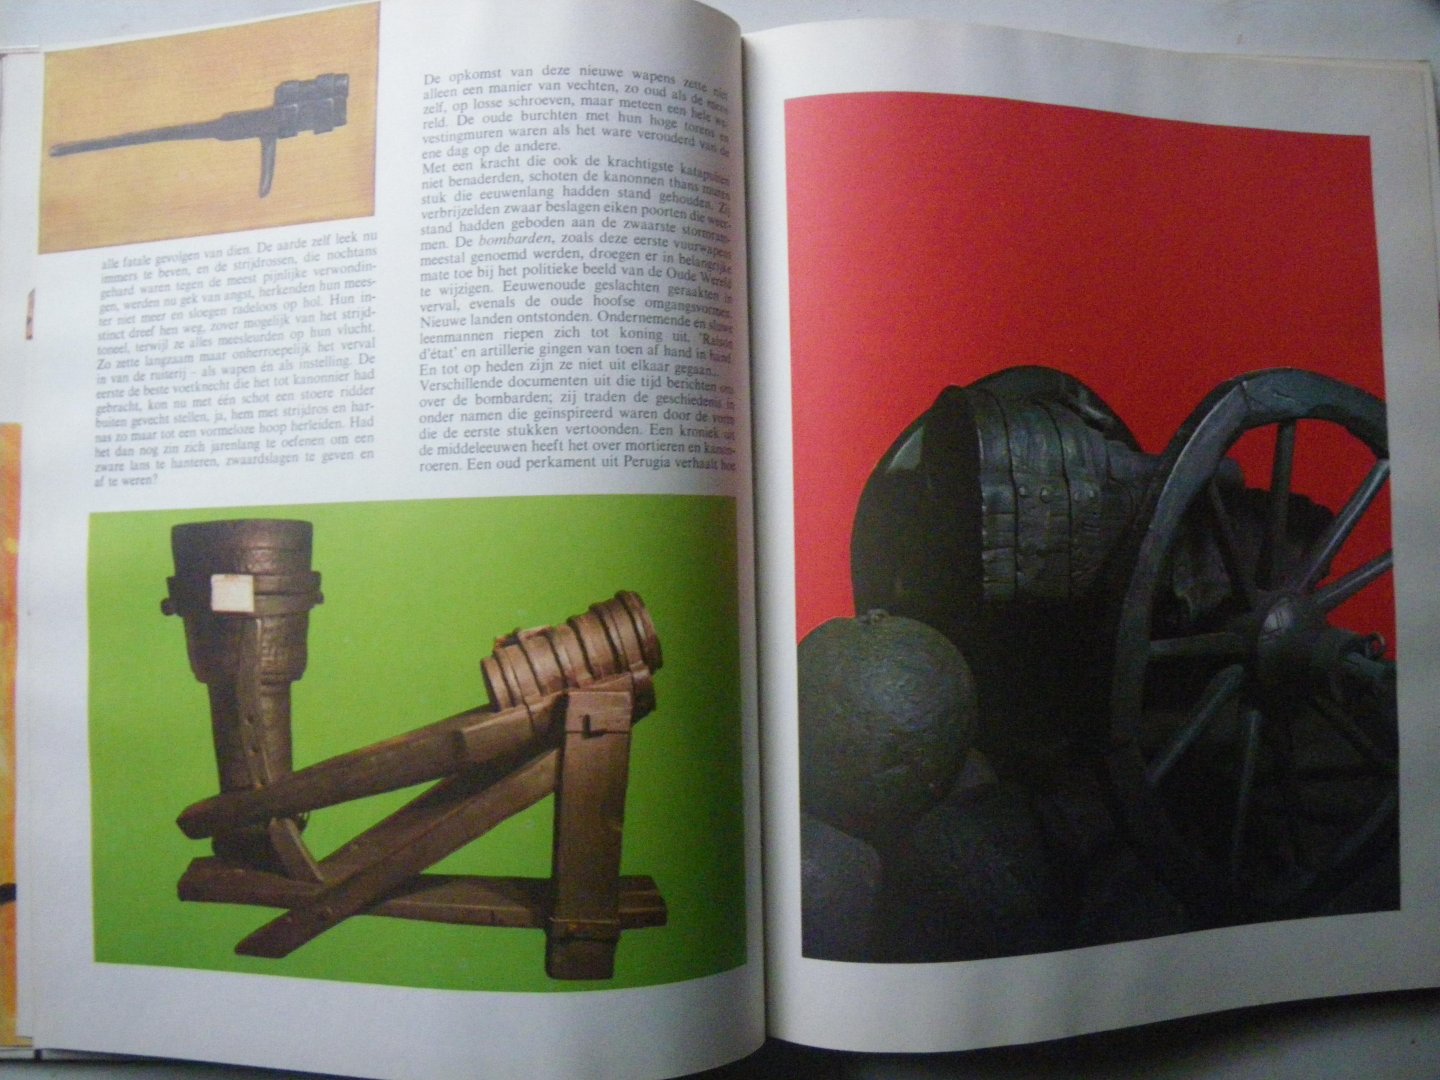 Picco, Achille - Geschiedenis van het wapen. deel 2: Musketten en houwitsers.